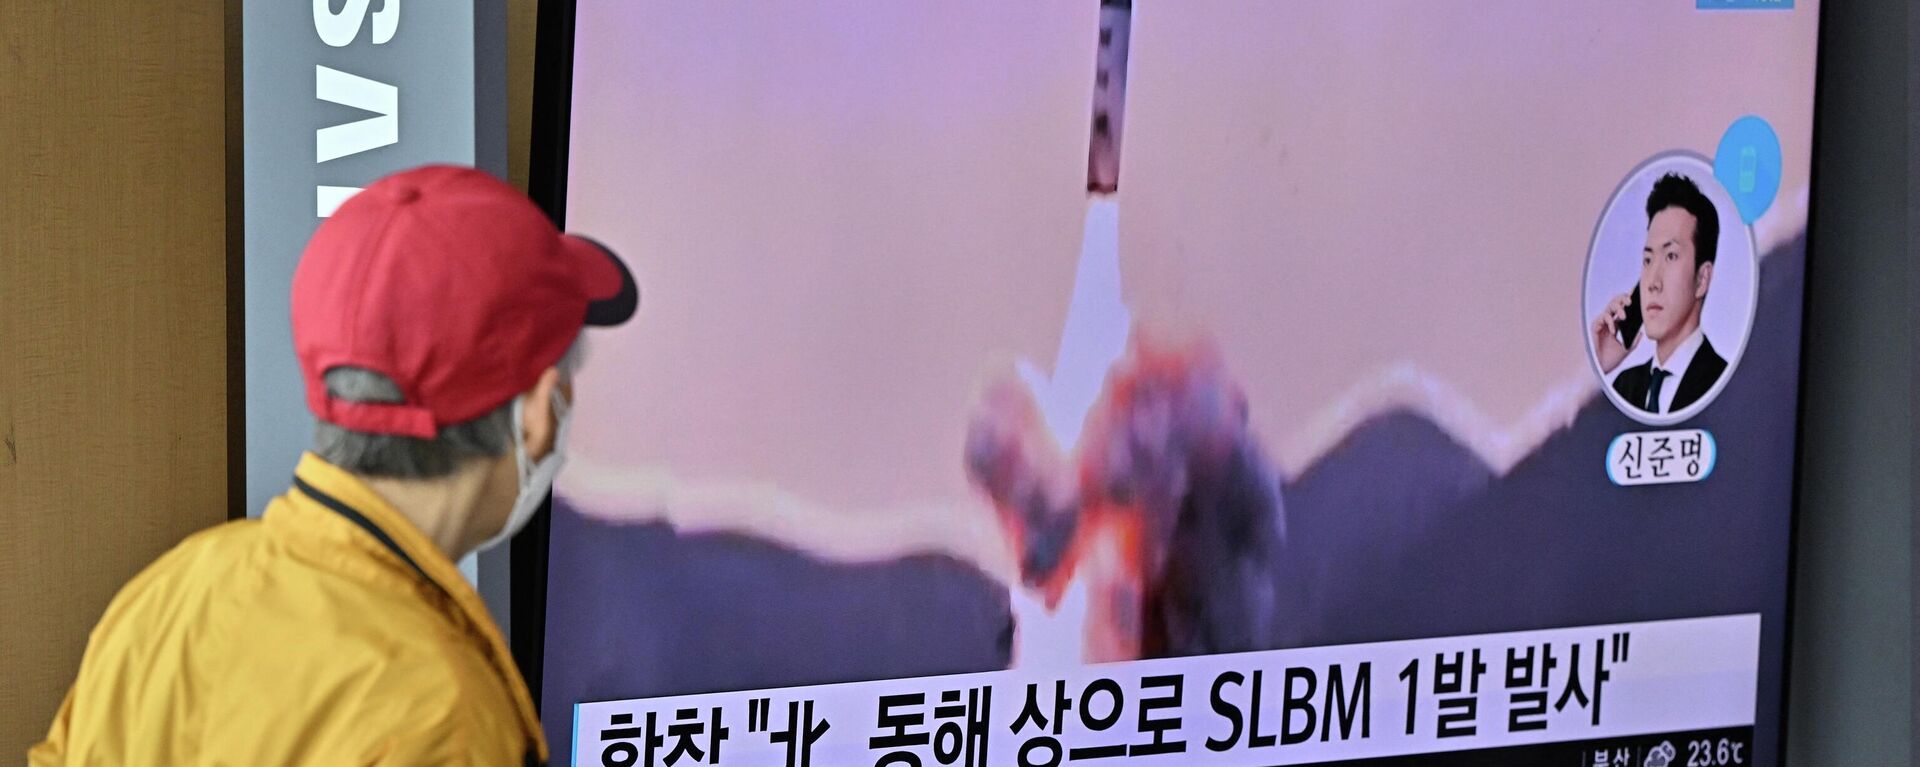 Espetador observa tela televisiva mostrando lançamento de míssil balístico lançado pela Coreia do Norte, em estação ferroviária de Seul, Coreia do Sul, 7 de maio de 2022 - Sputnik Brasil, 1920, 08.05.2022